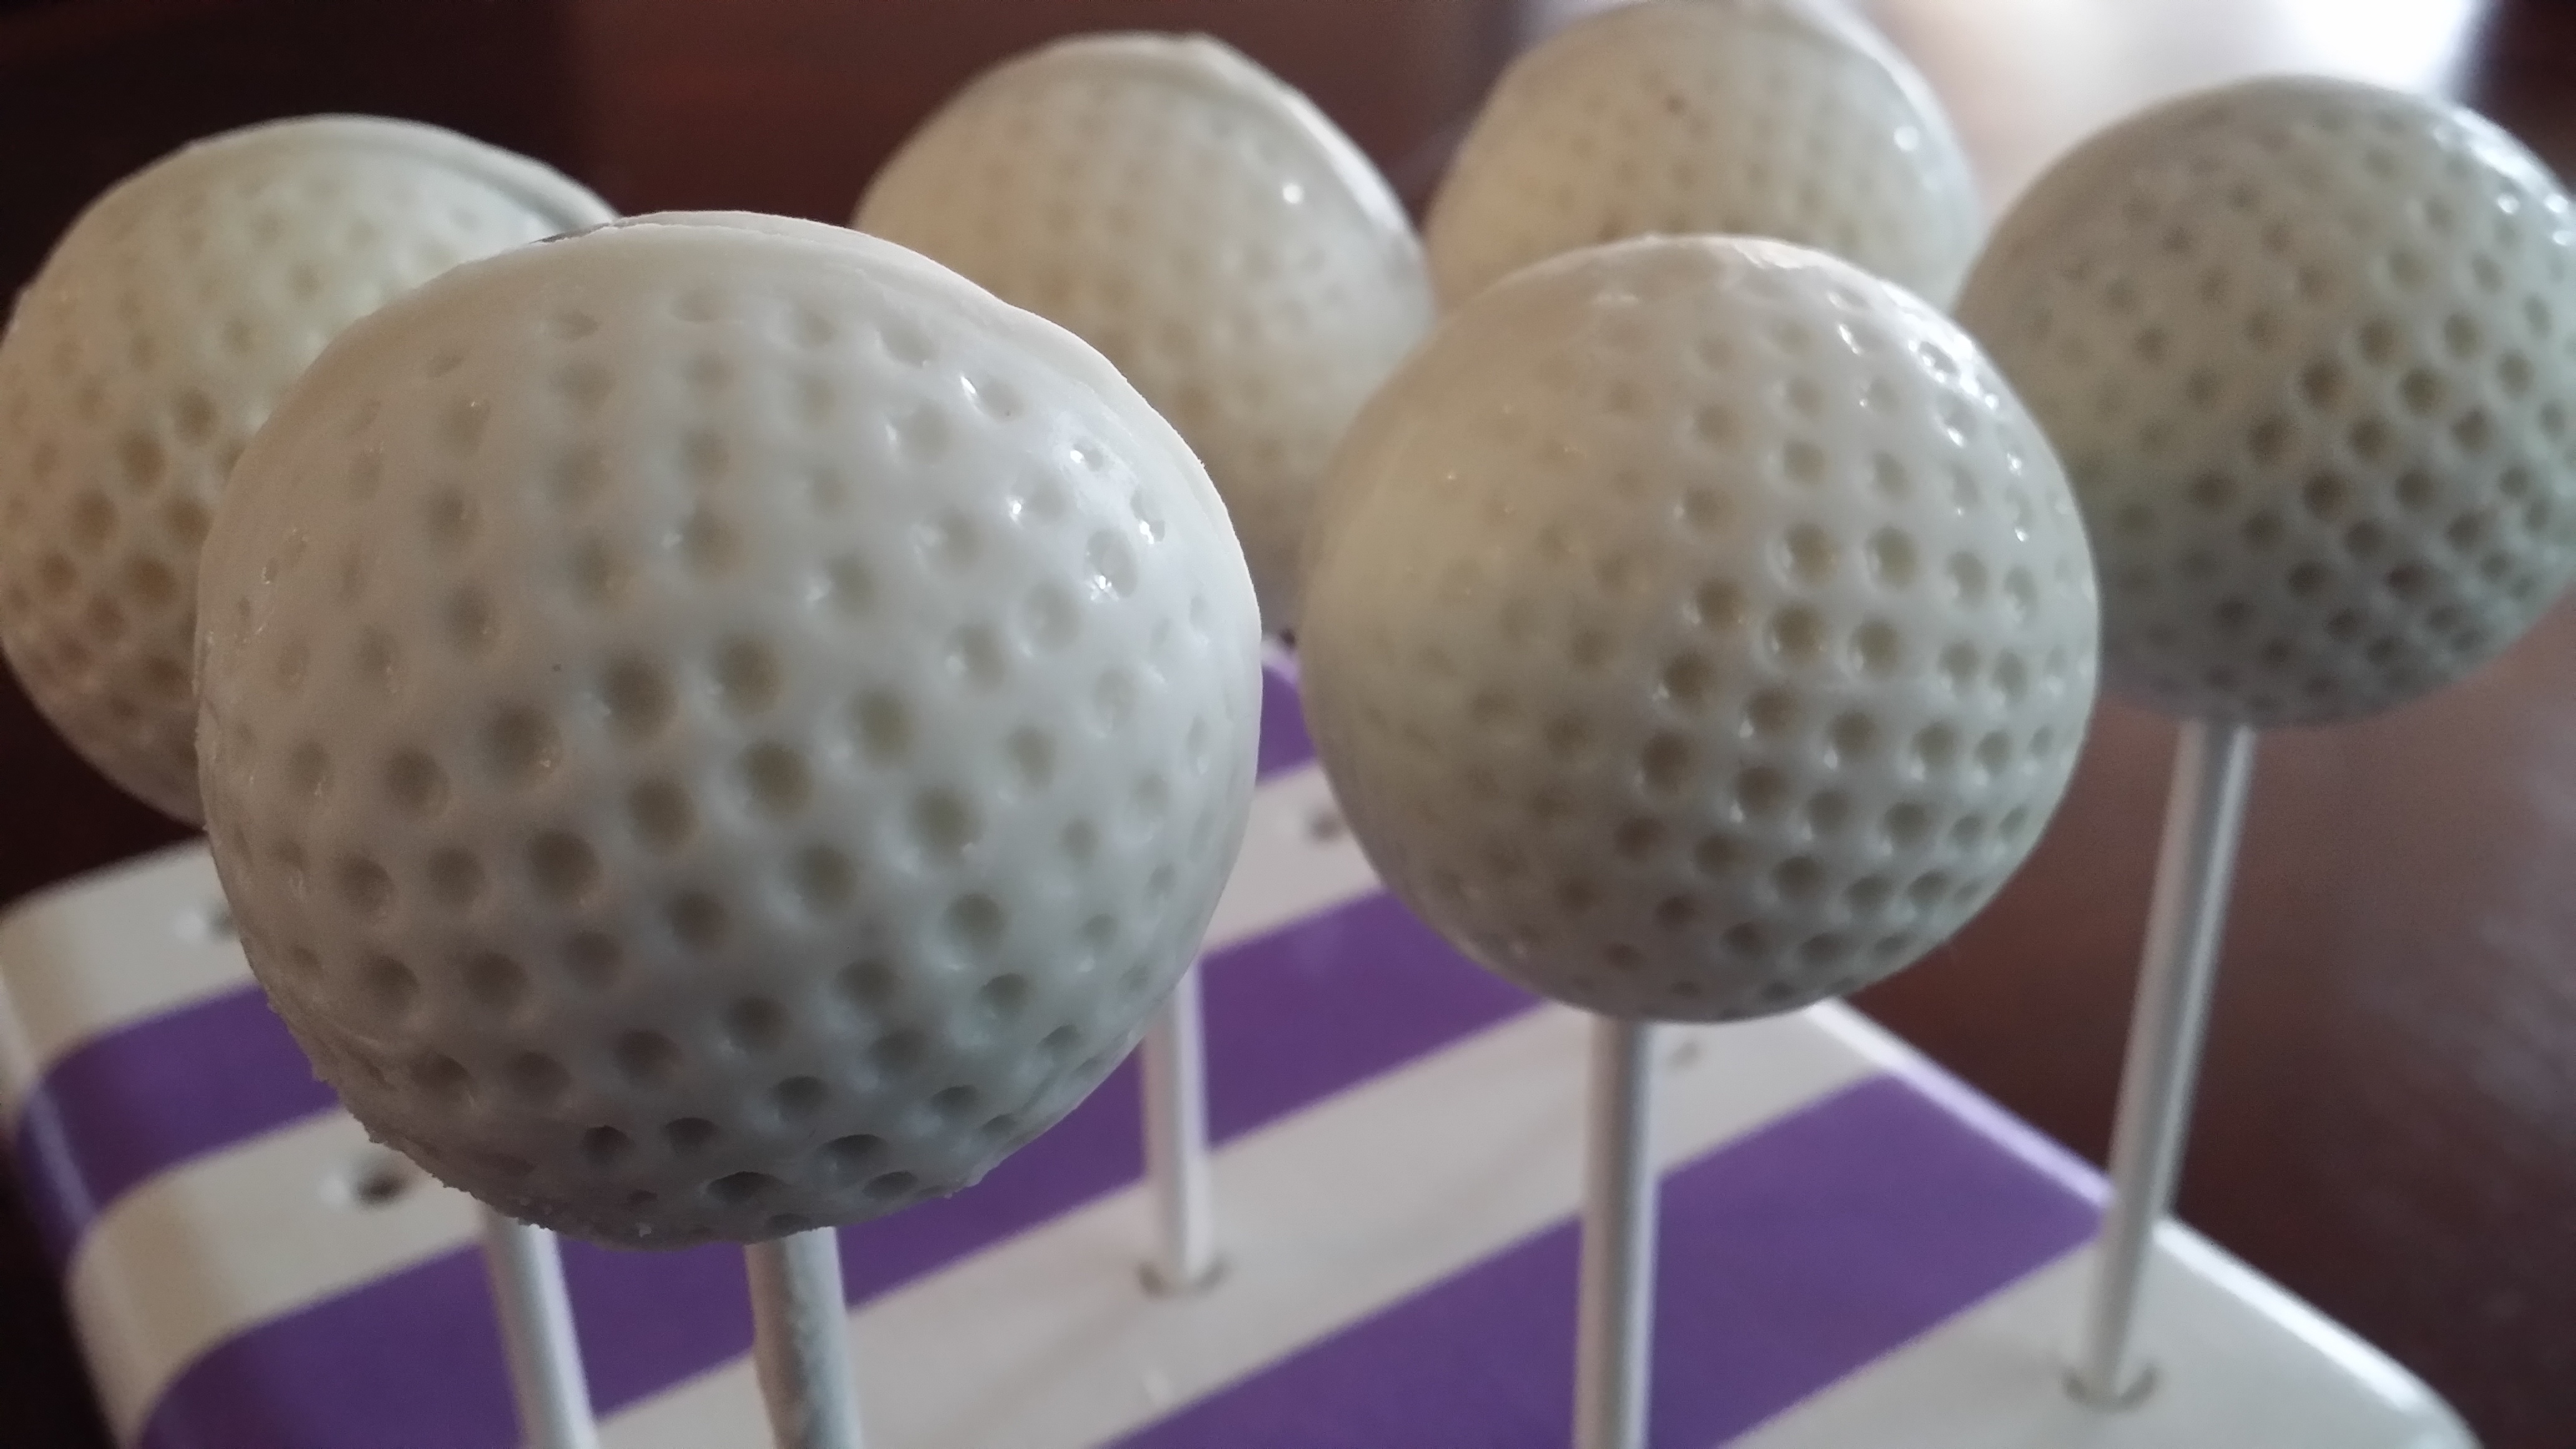 Golf ball cake pop! Love these #golf #golfballcakepops #cakepops